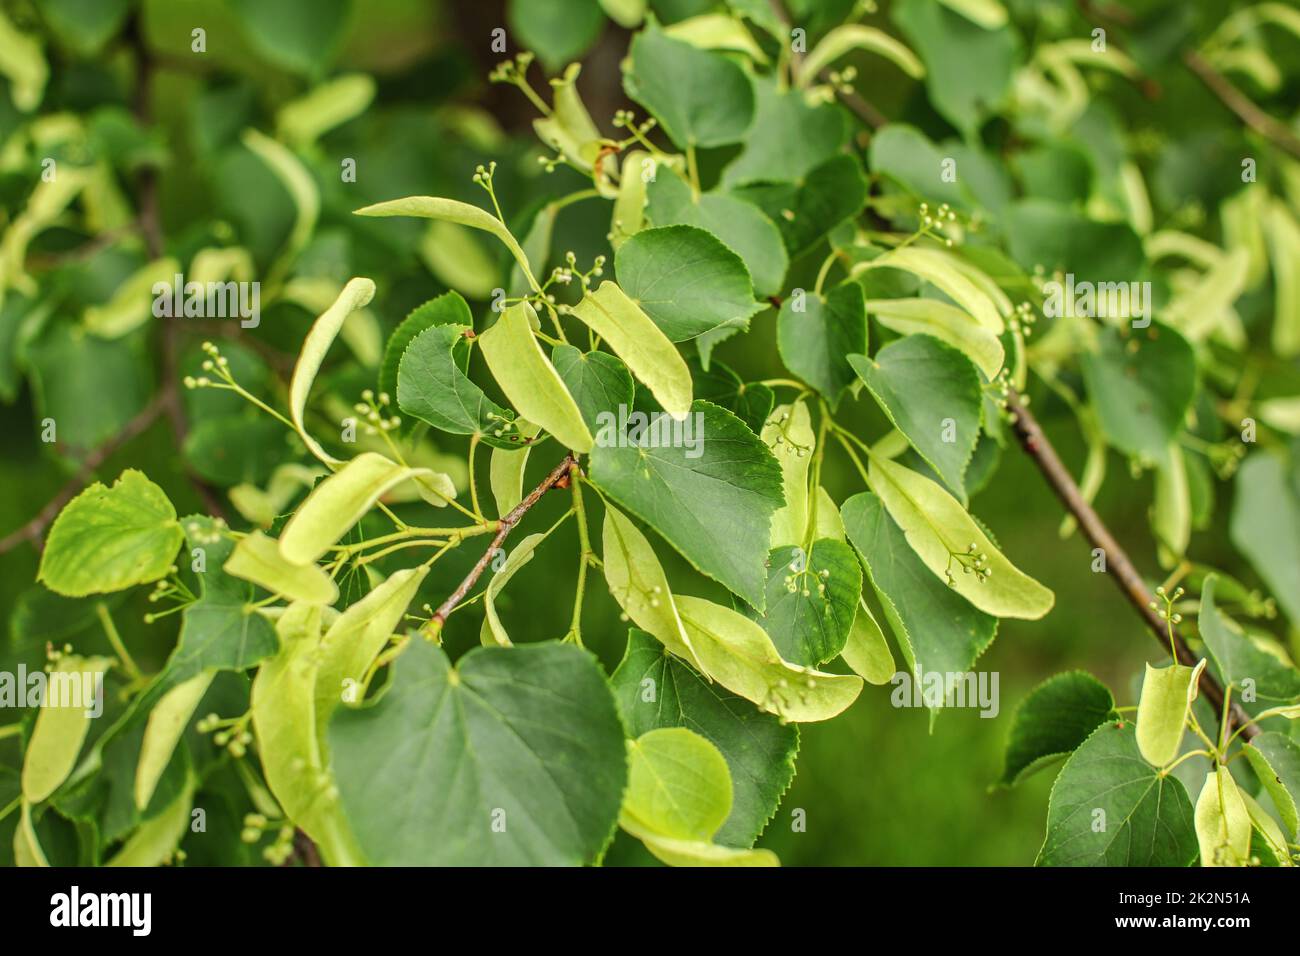 Petites feuilles de tilleul (Tilia cordata) Feuilles et fruits qui poussent sur les branches d'arbres Banque D'Images